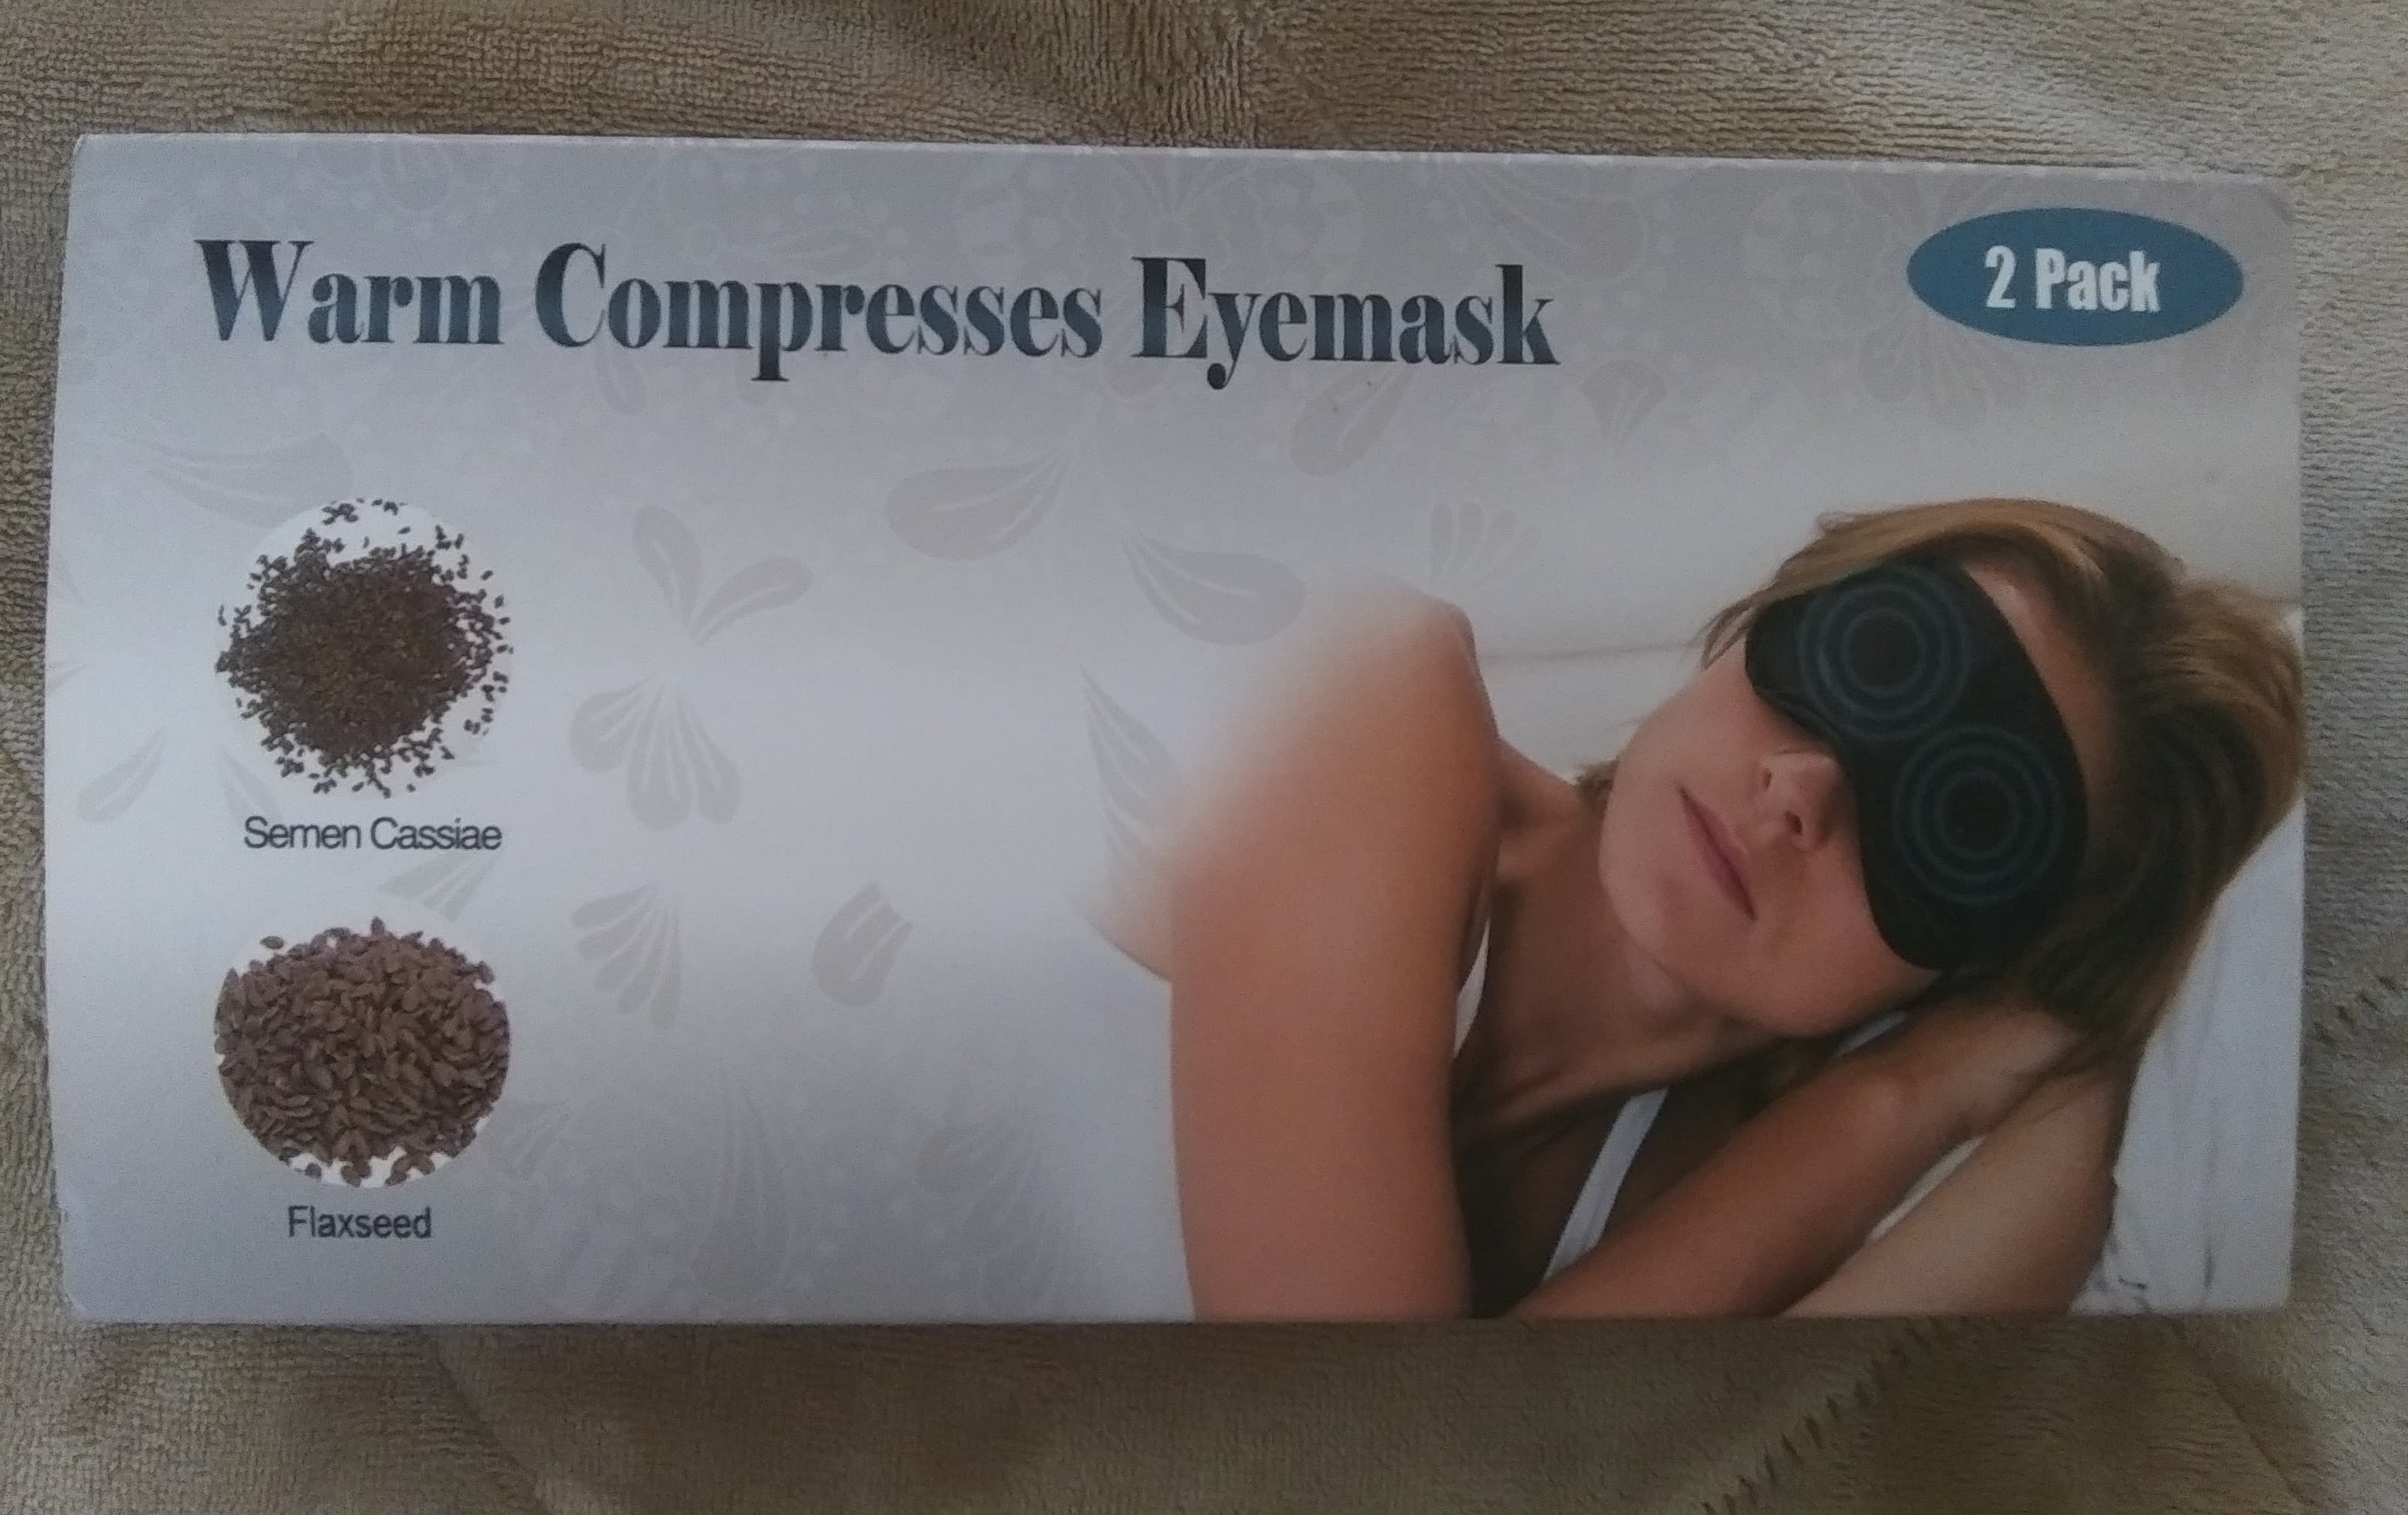 Eyemask